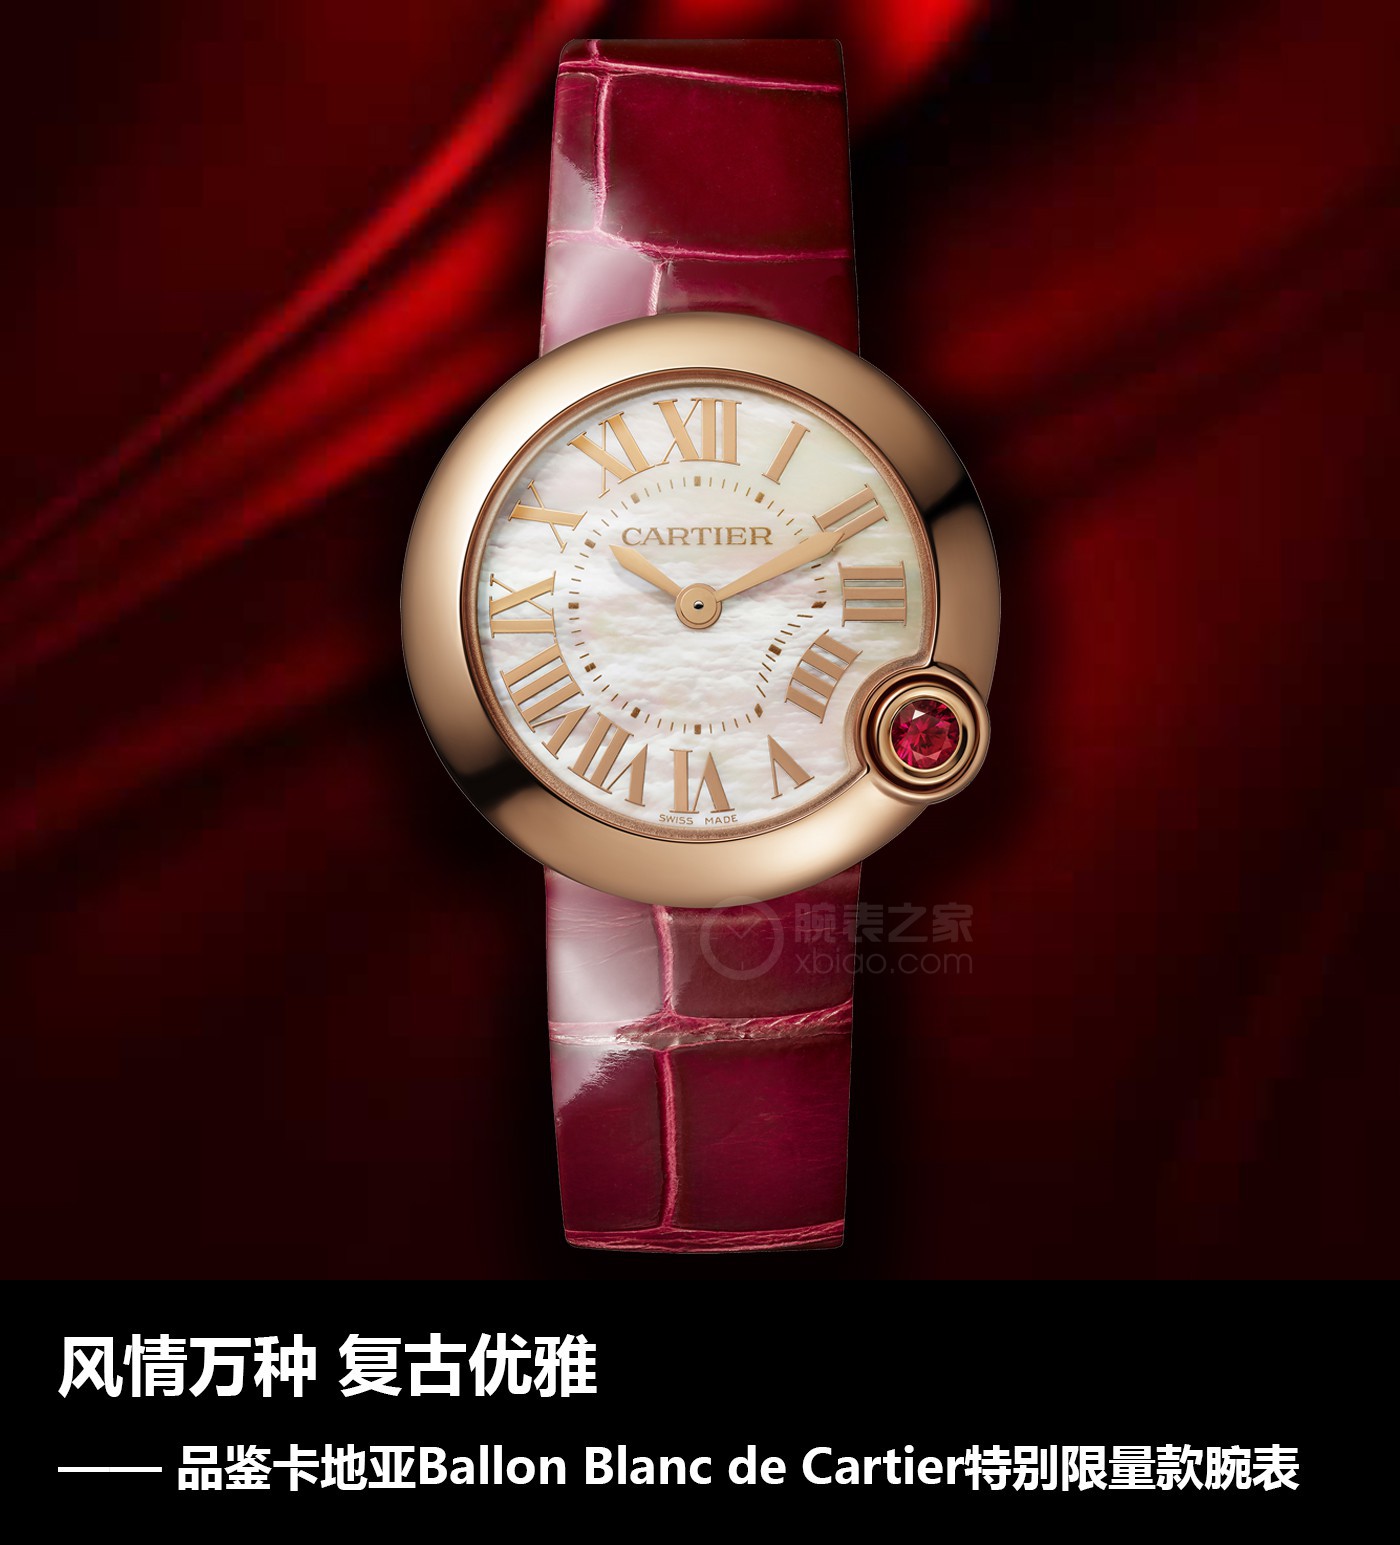 魔高一尺：风情万种 复古优雅 品鉴卡地亚Ballon Blanc de Cartier特别限量款腕表